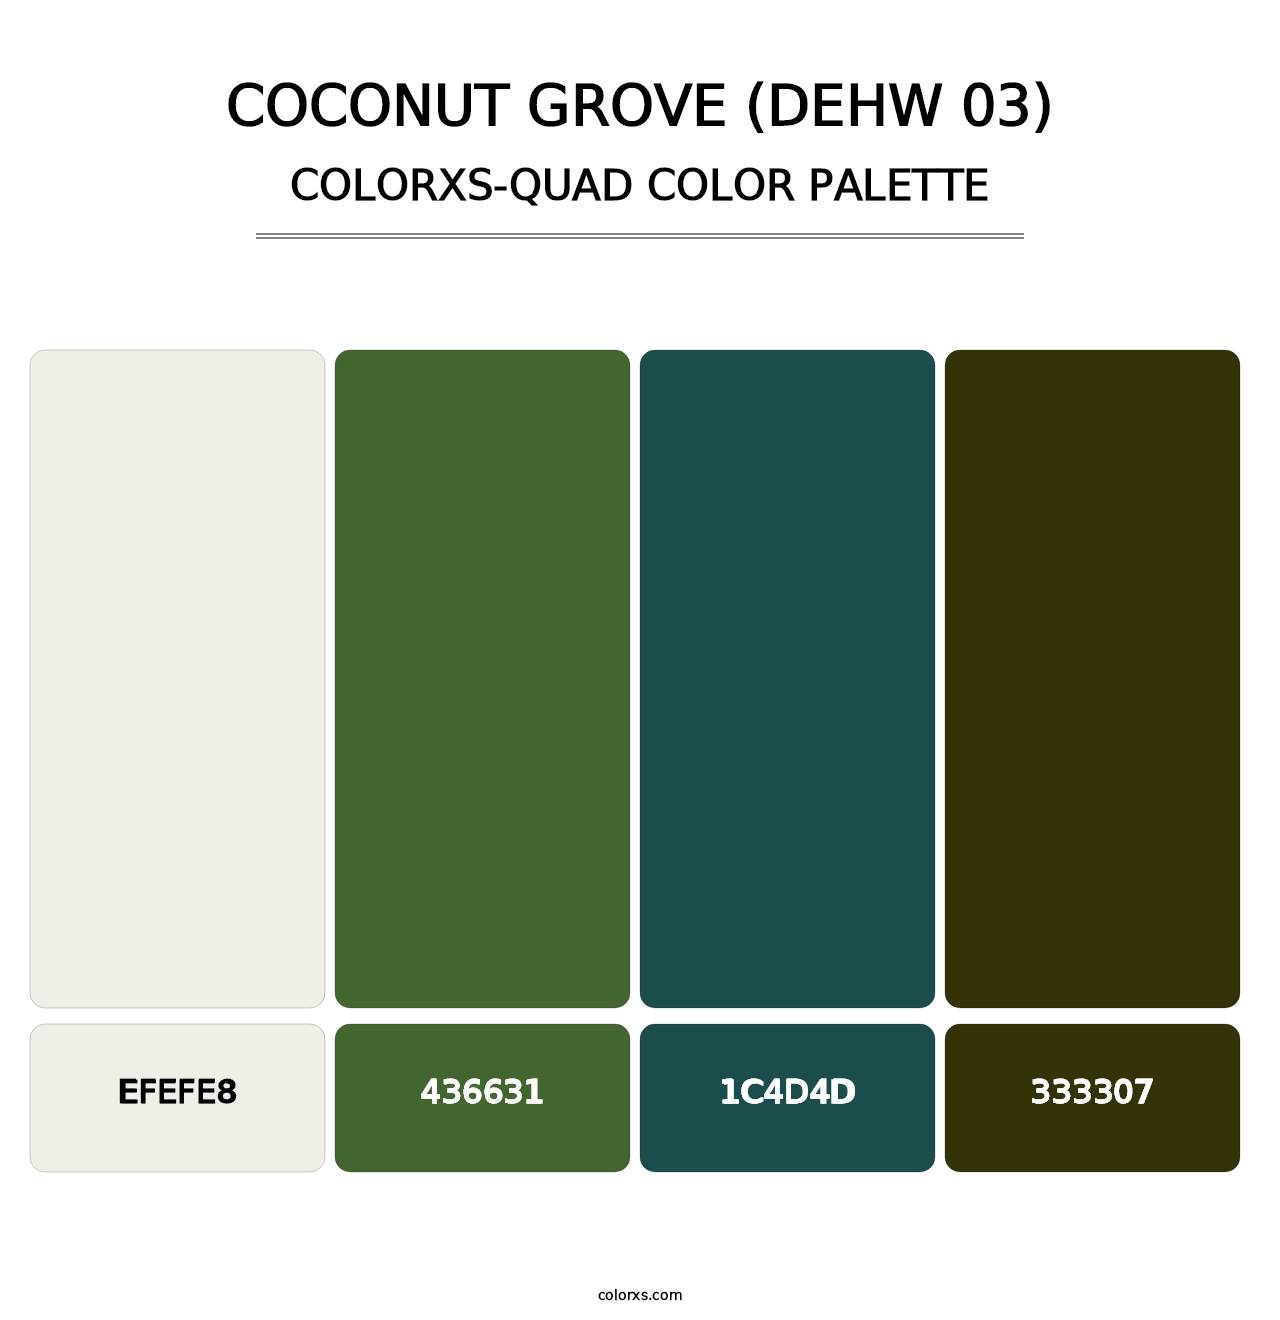 Coconut Grove (DEHW 03) - Colorxs Quad Palette